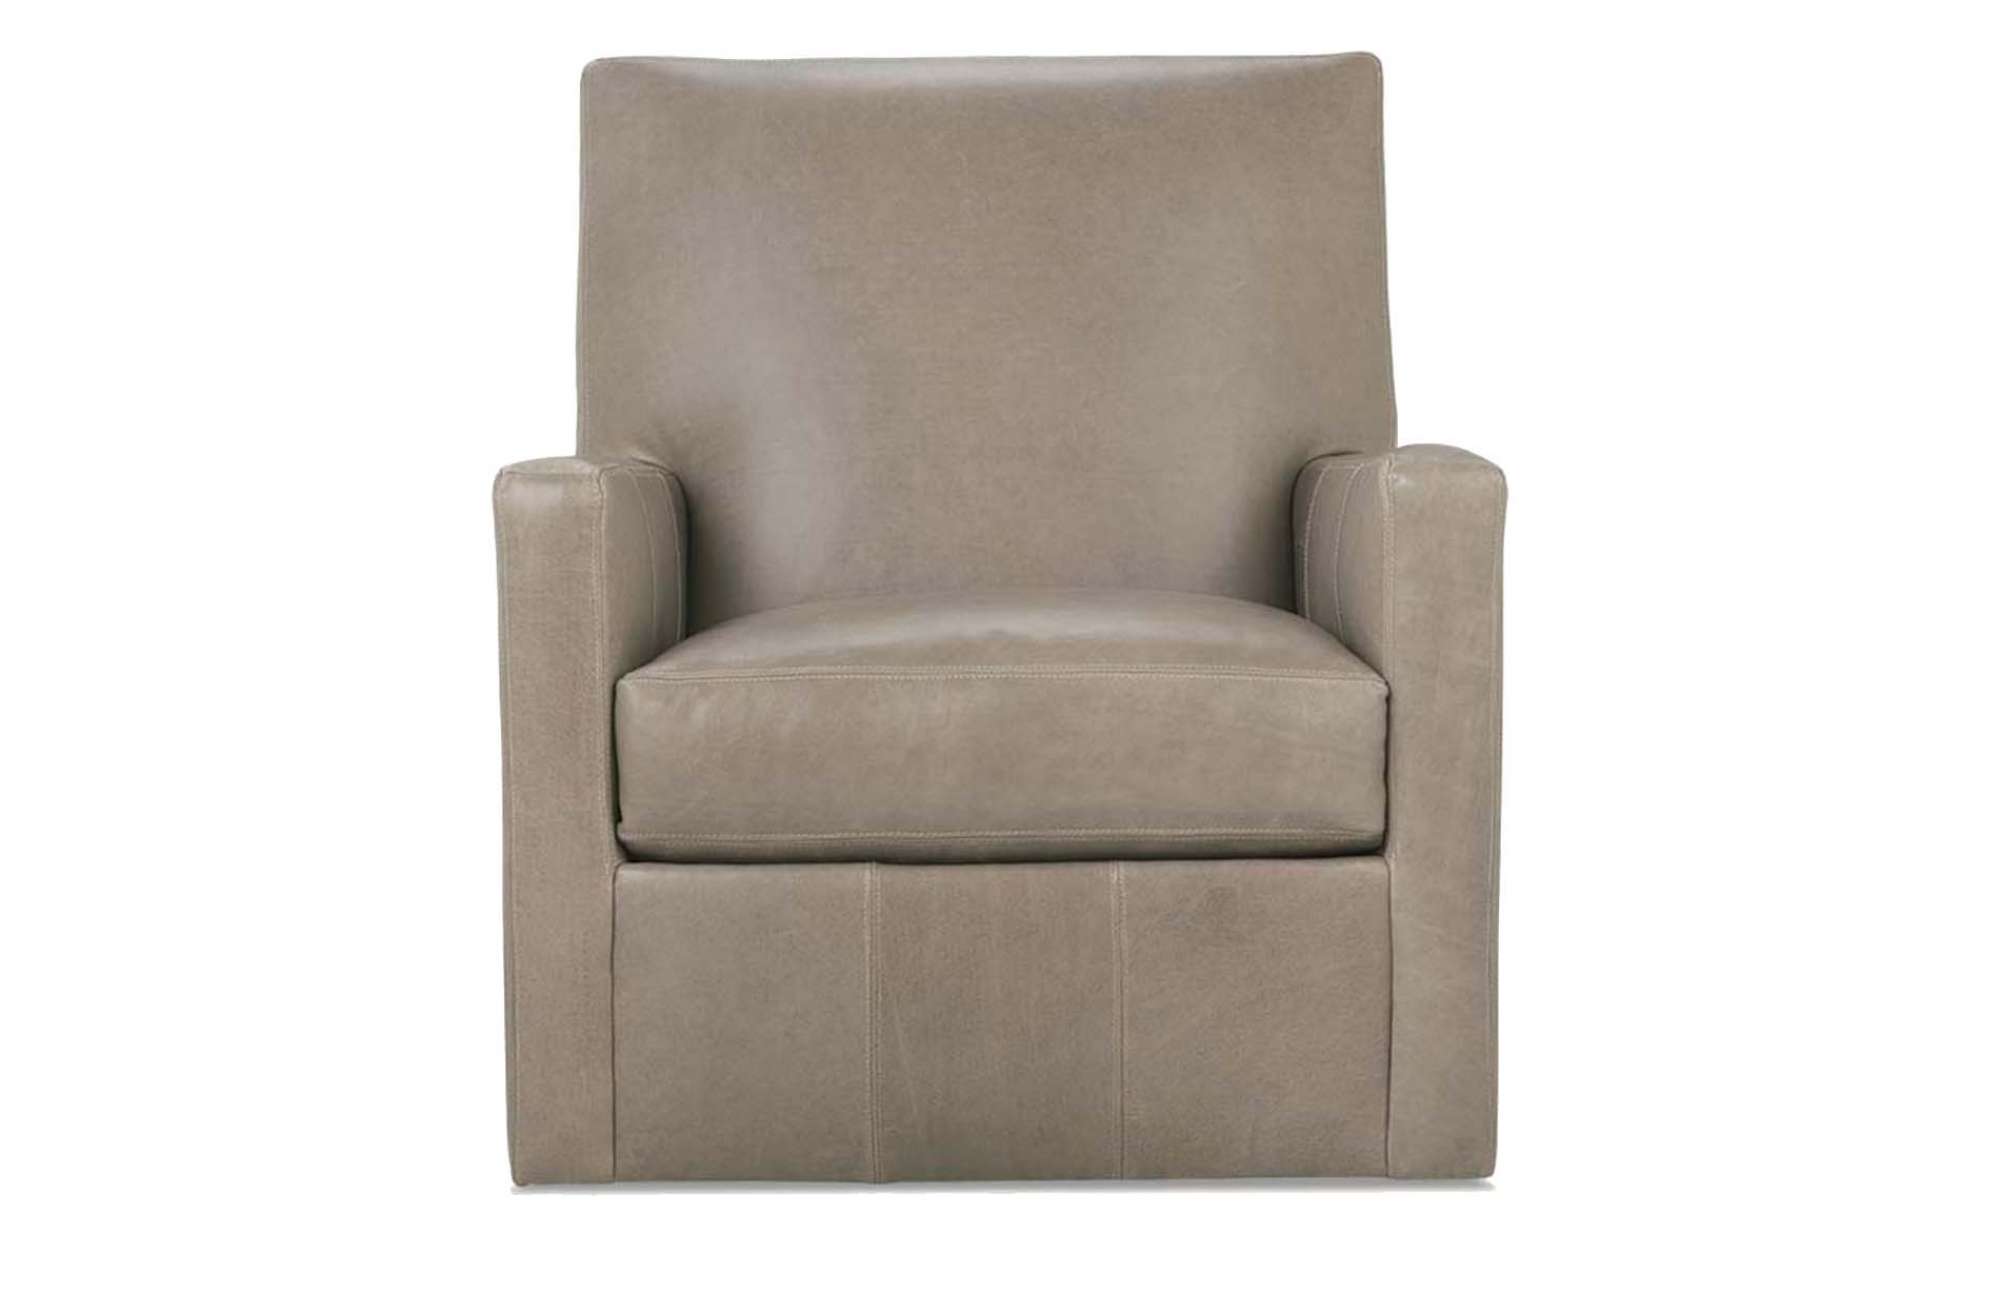 Rowan Leather Swivel Glide Chair